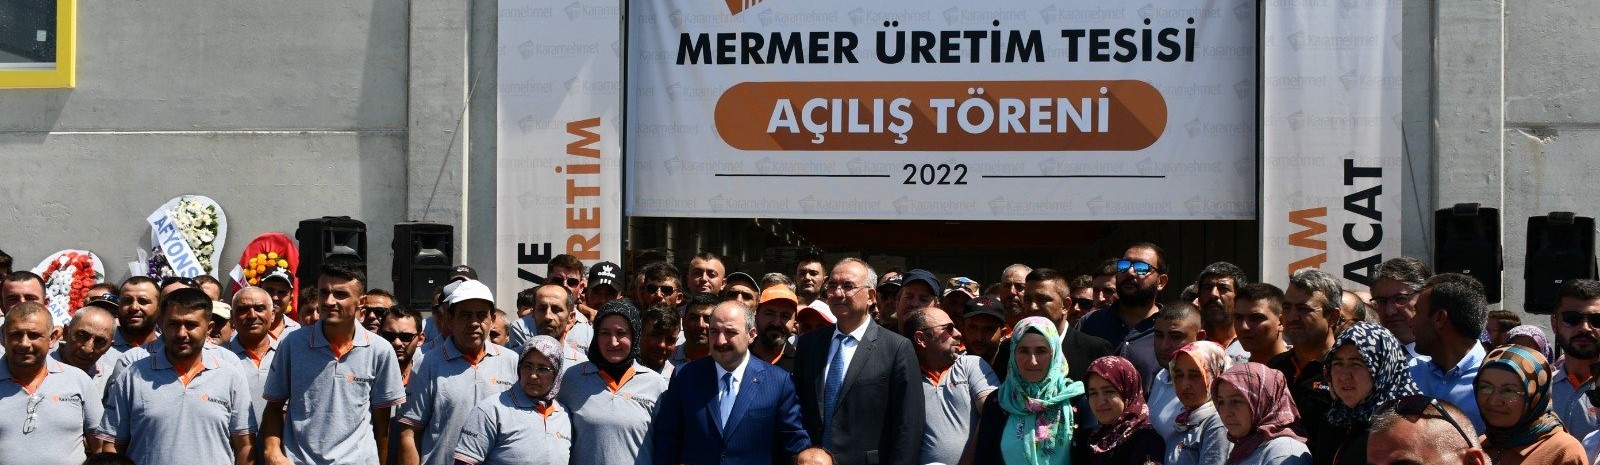 Sanayi ve Teknoloji Bakanı Mustafa Varank, Karamehmet Mermer Fabrikası'nın açılış törenine katıldı.